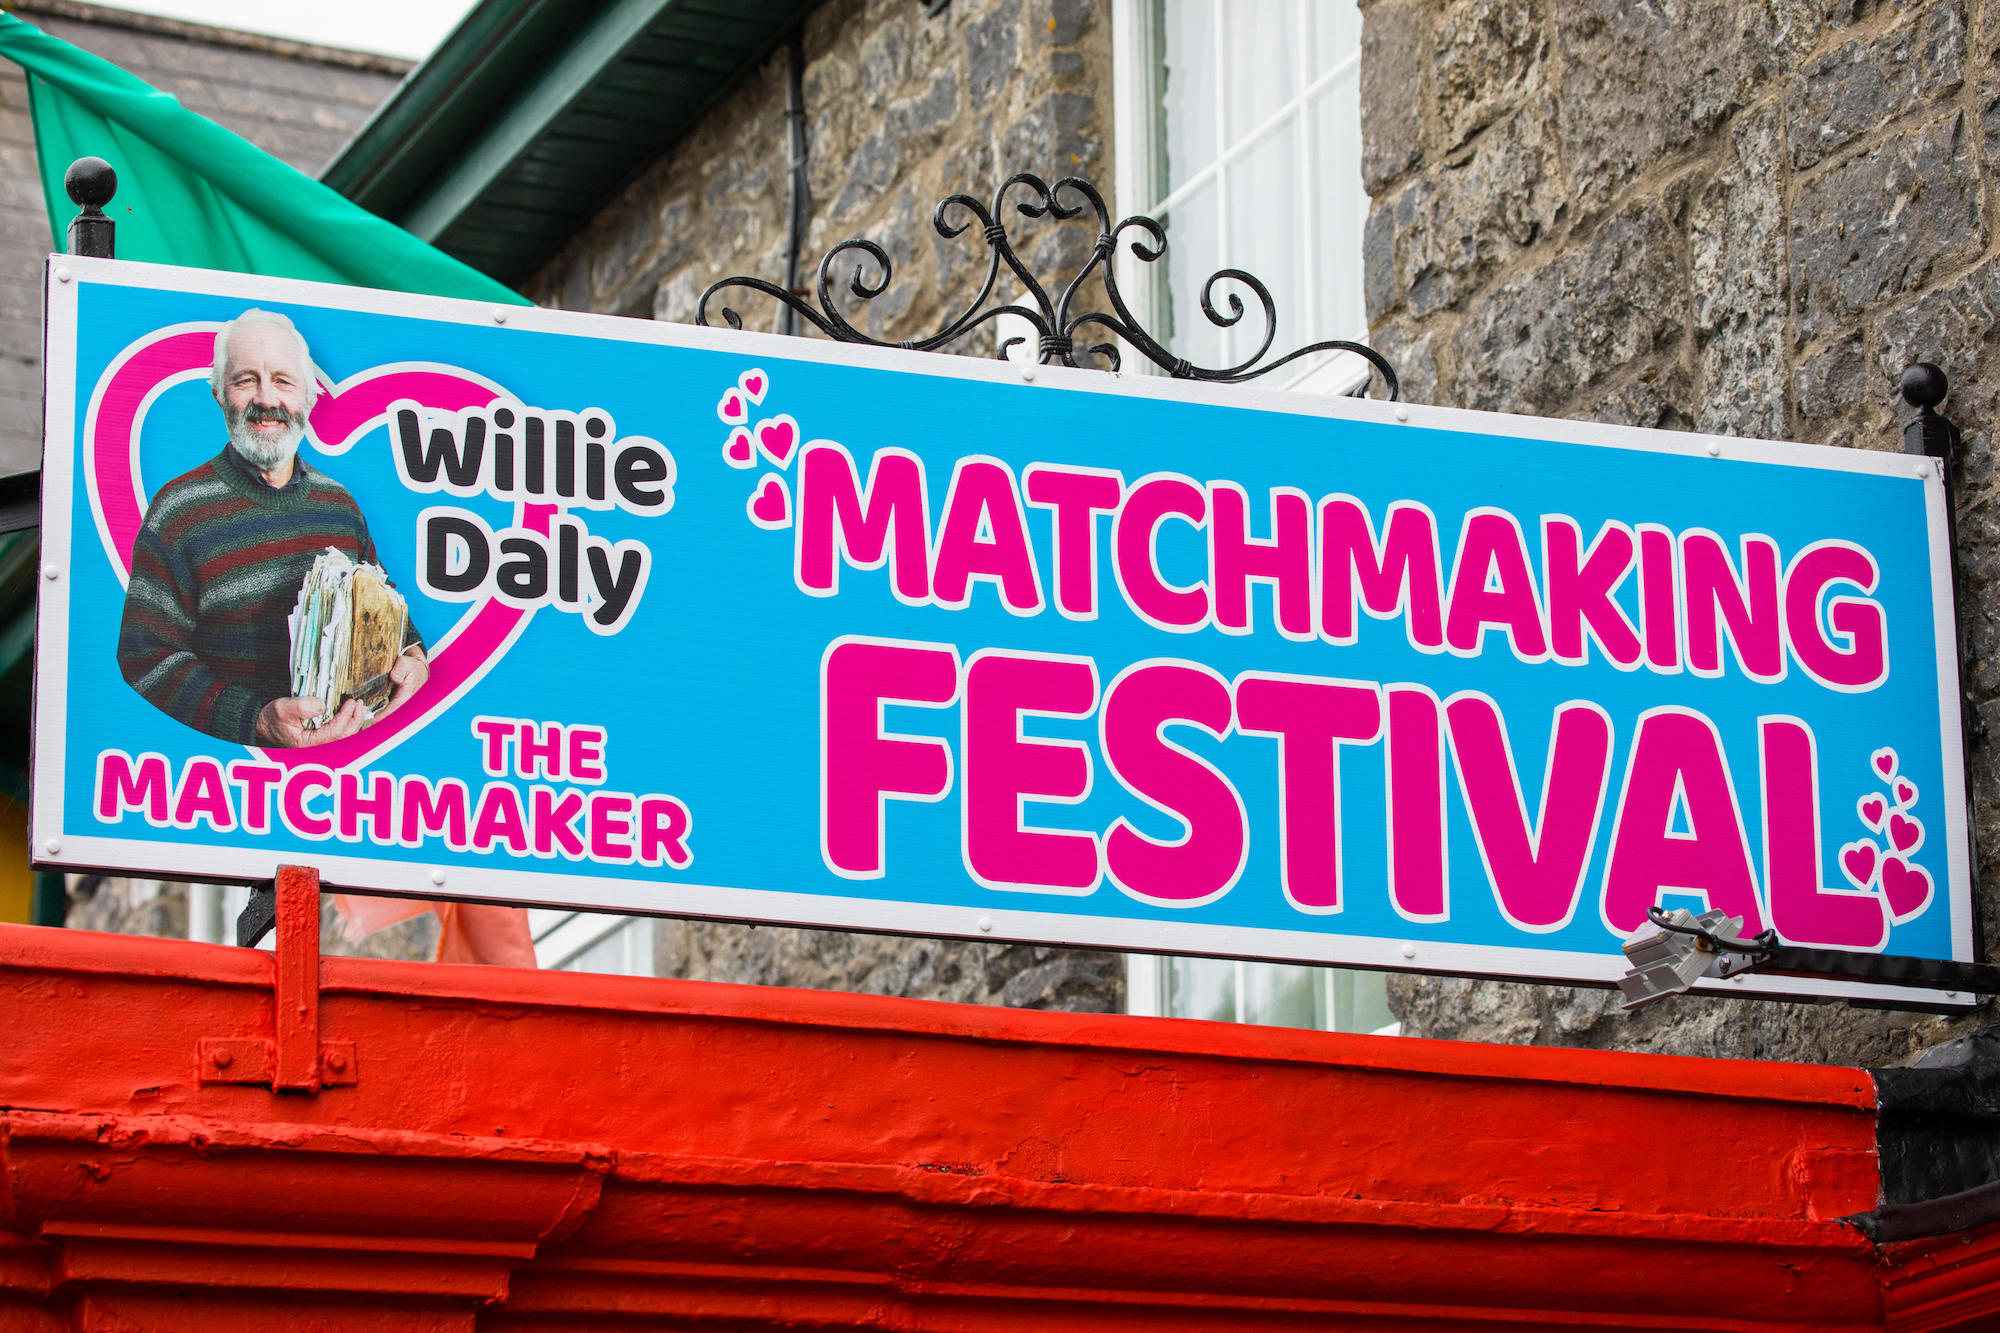 Matchmaking festival lisdoonvarna irsko